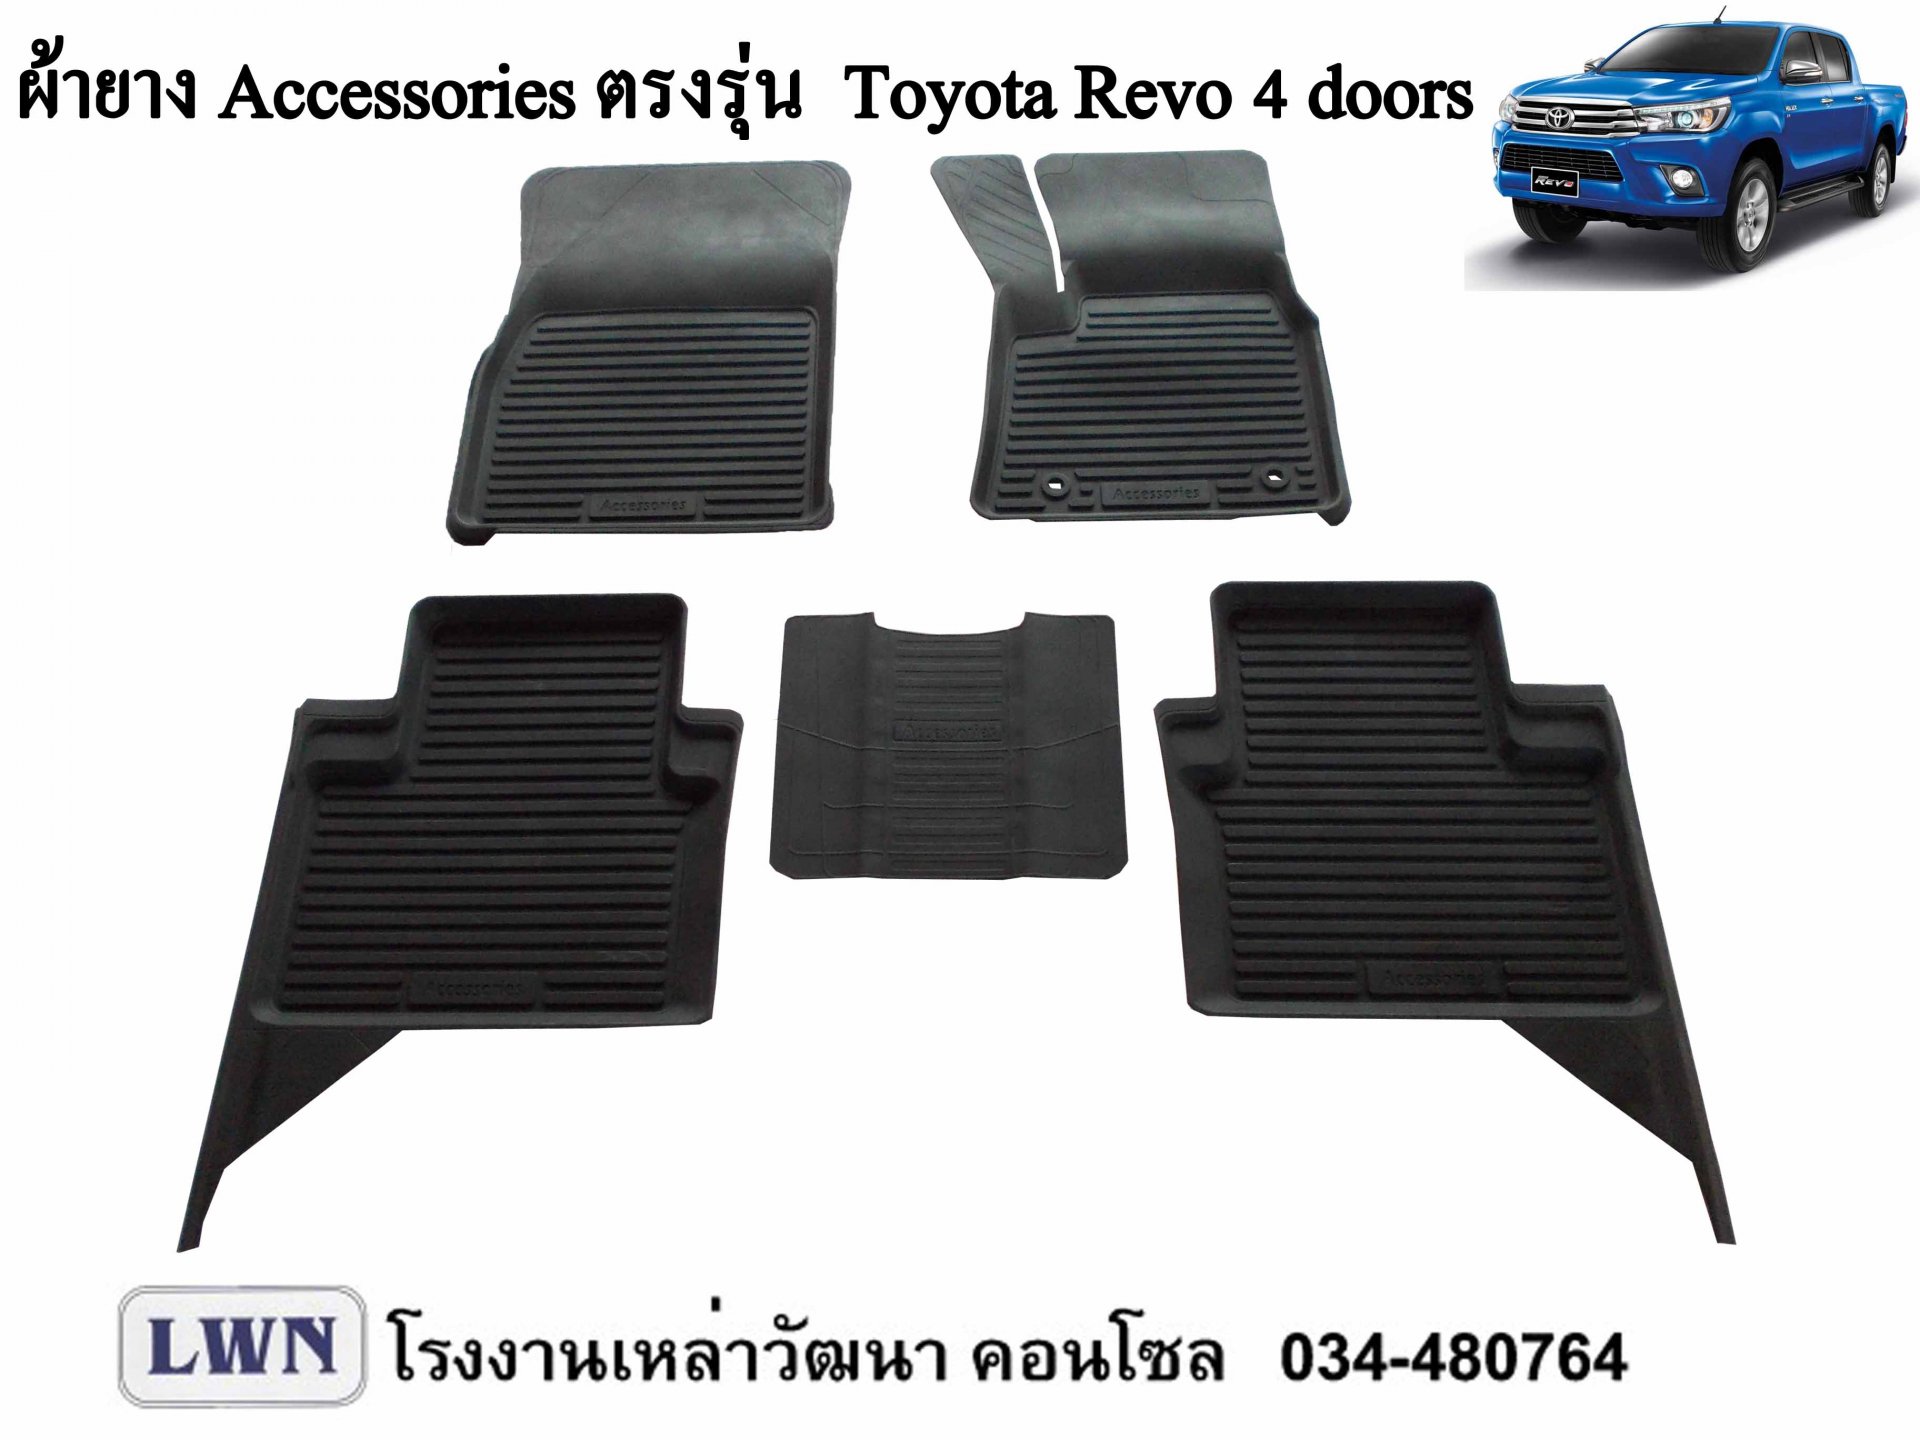 ผ้ายางปูพื้น Toyota Revo 4ประตู